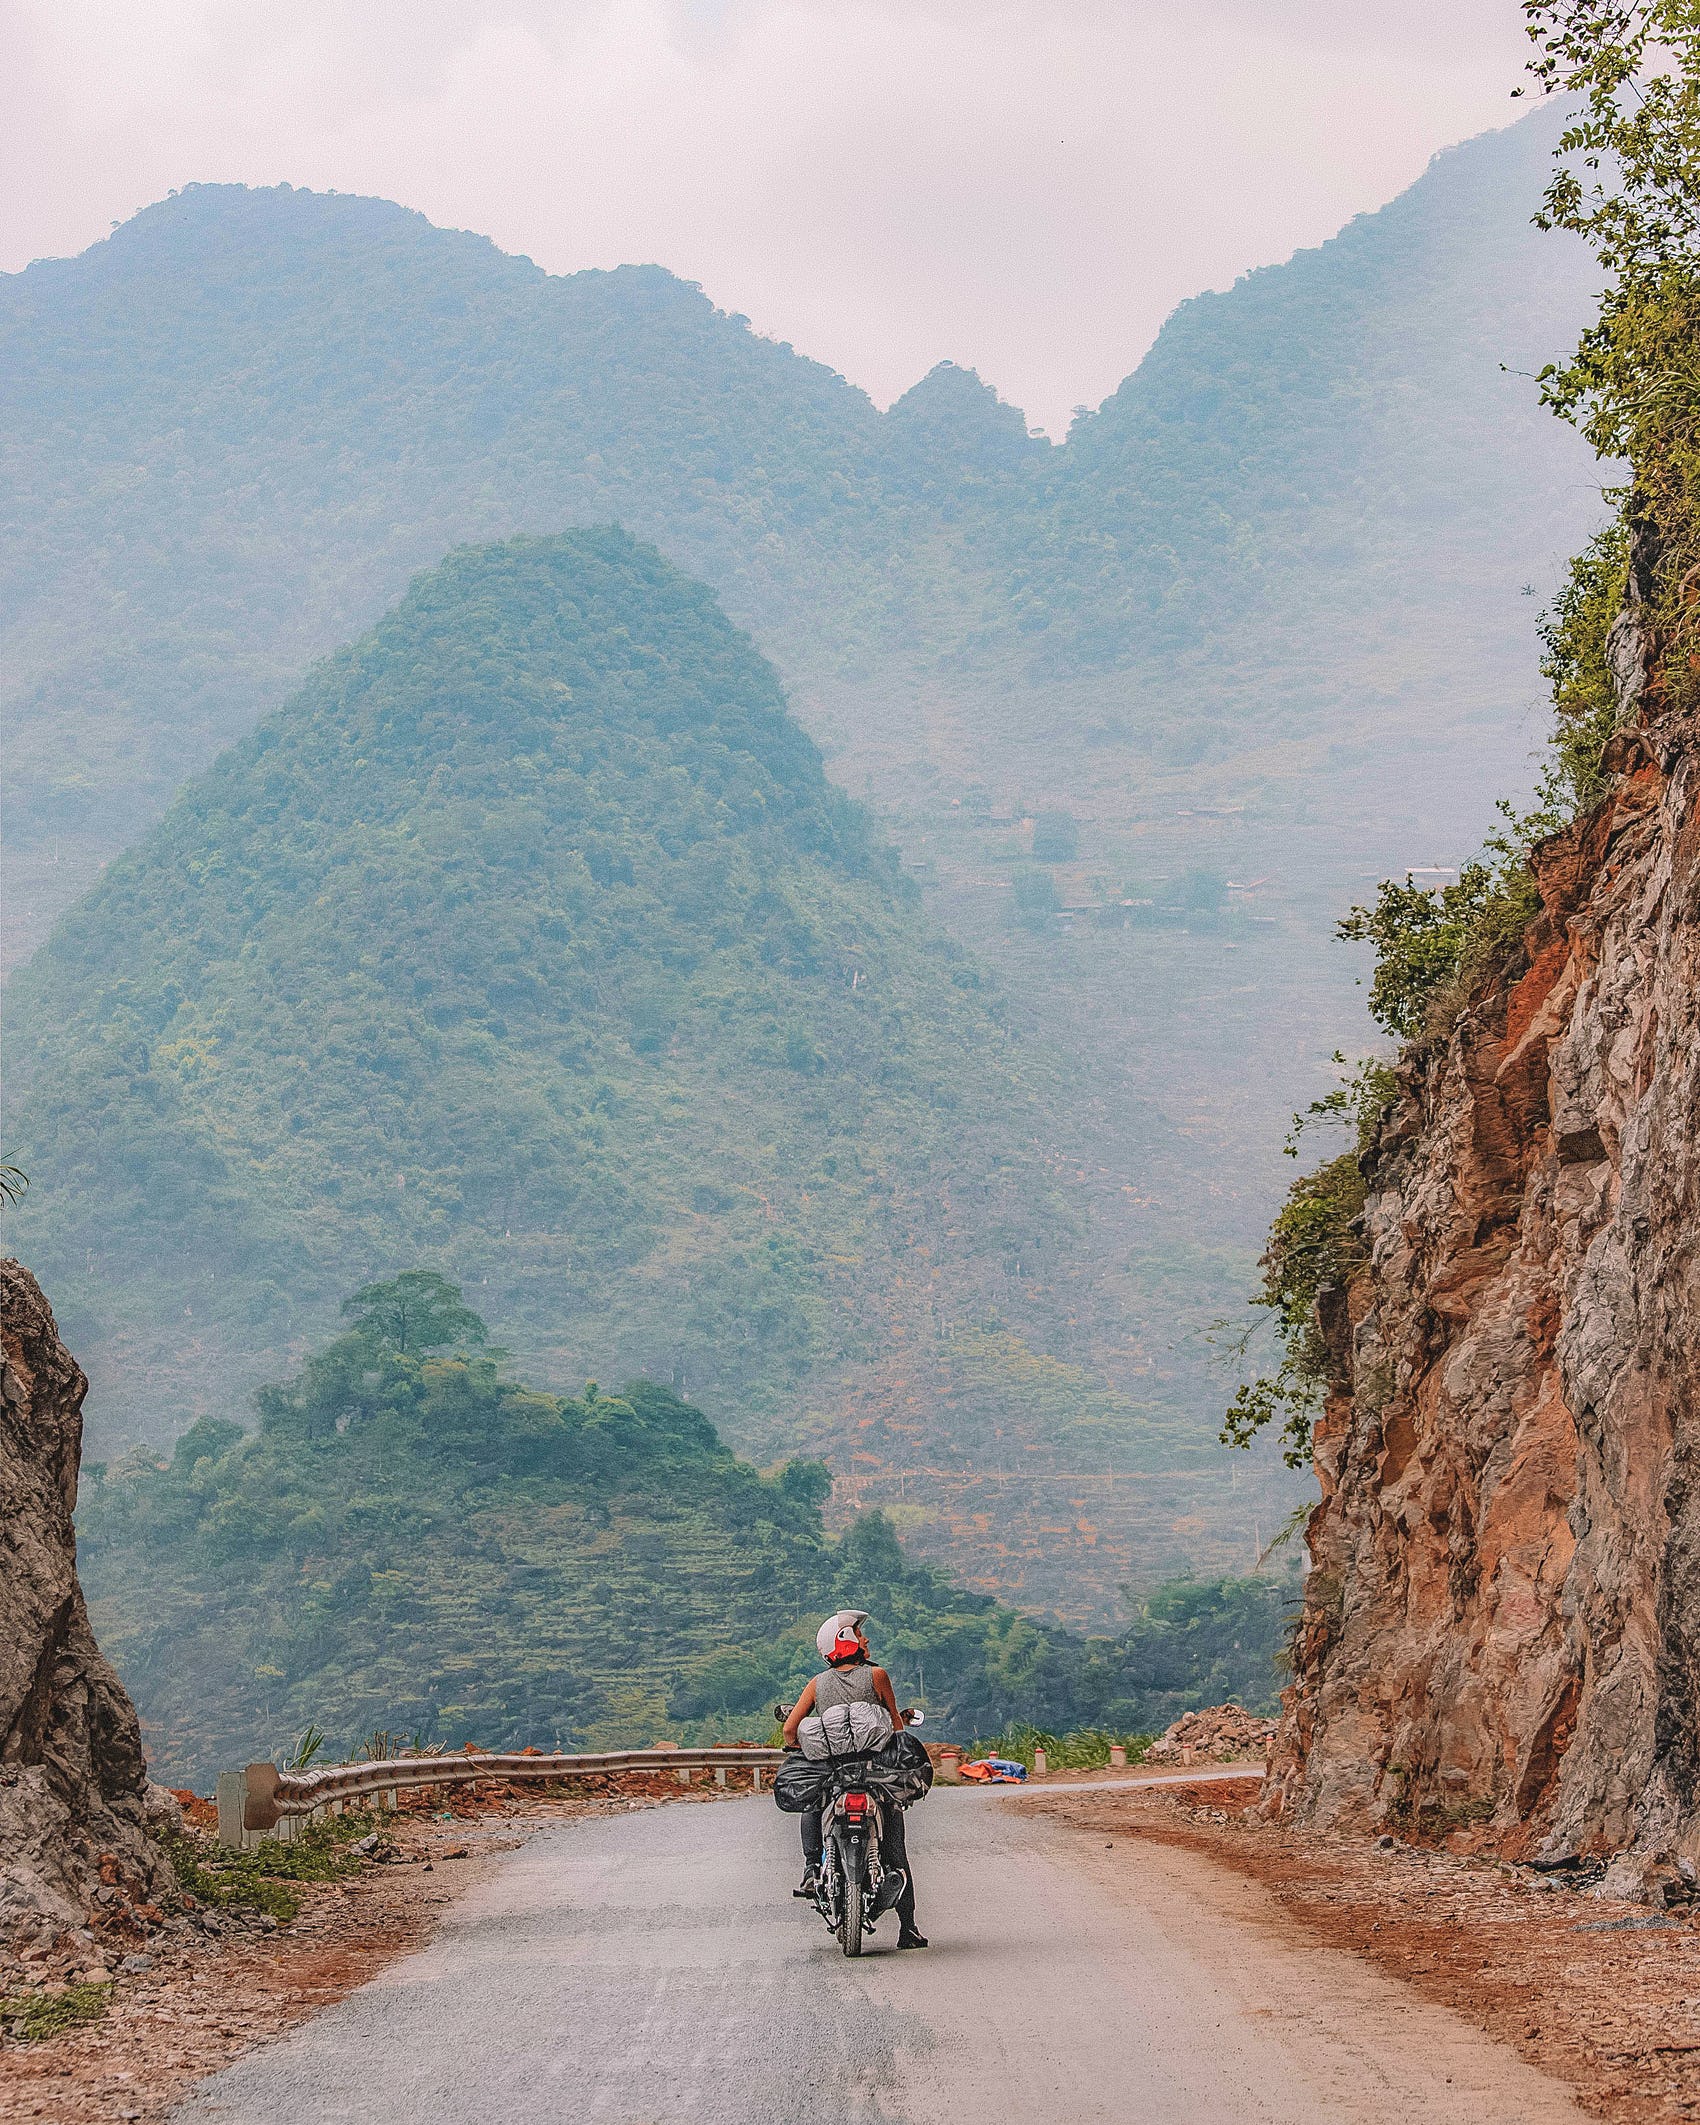 Mê mẩn những cung đường du lịch tuyệt đẹp ở Việt Nam - 2